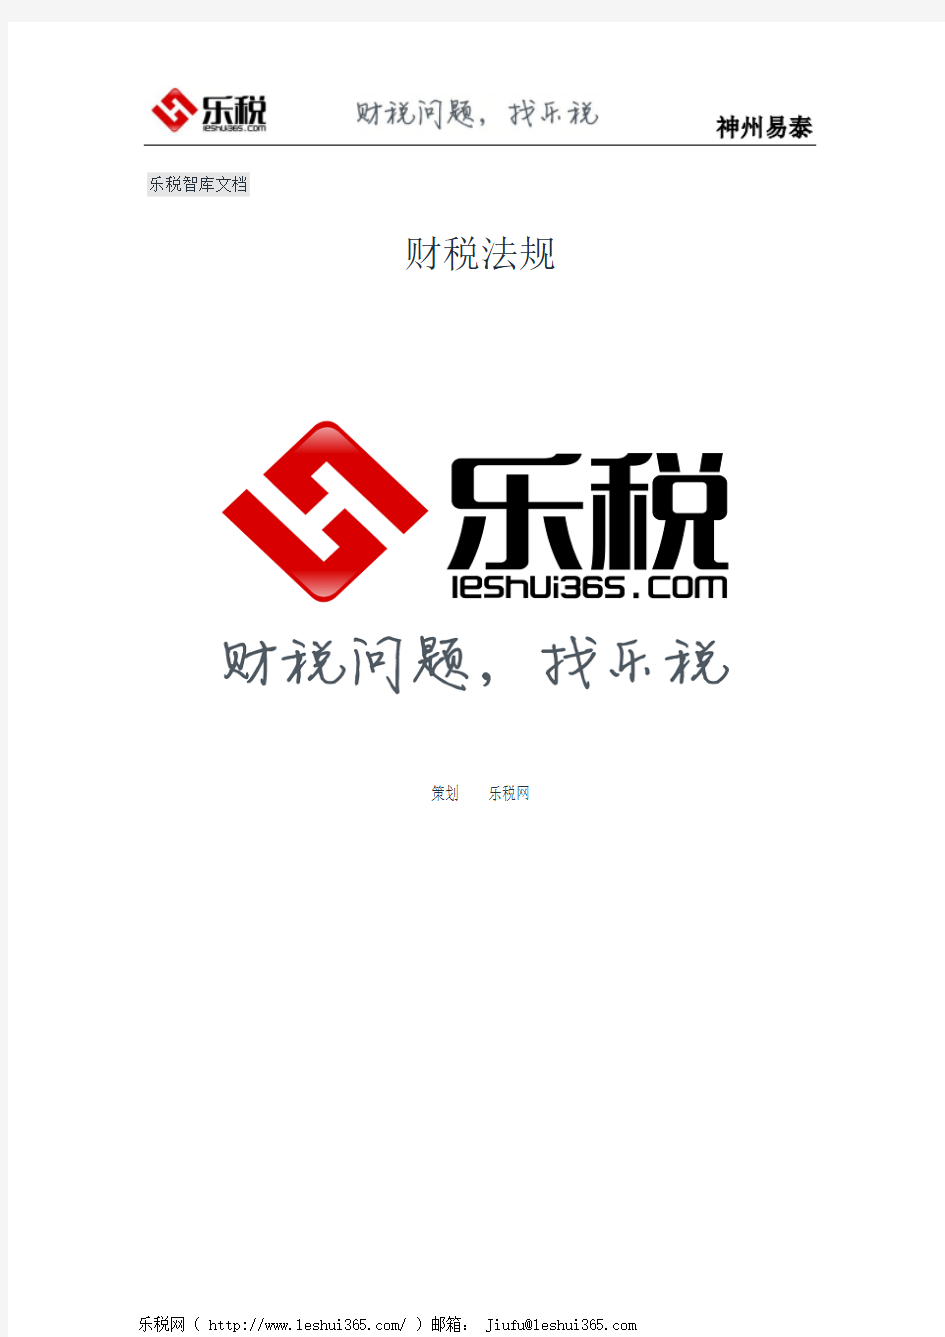 上海市国家税务局 上海市地方税务局关于上海耀皮玻璃股份有限公